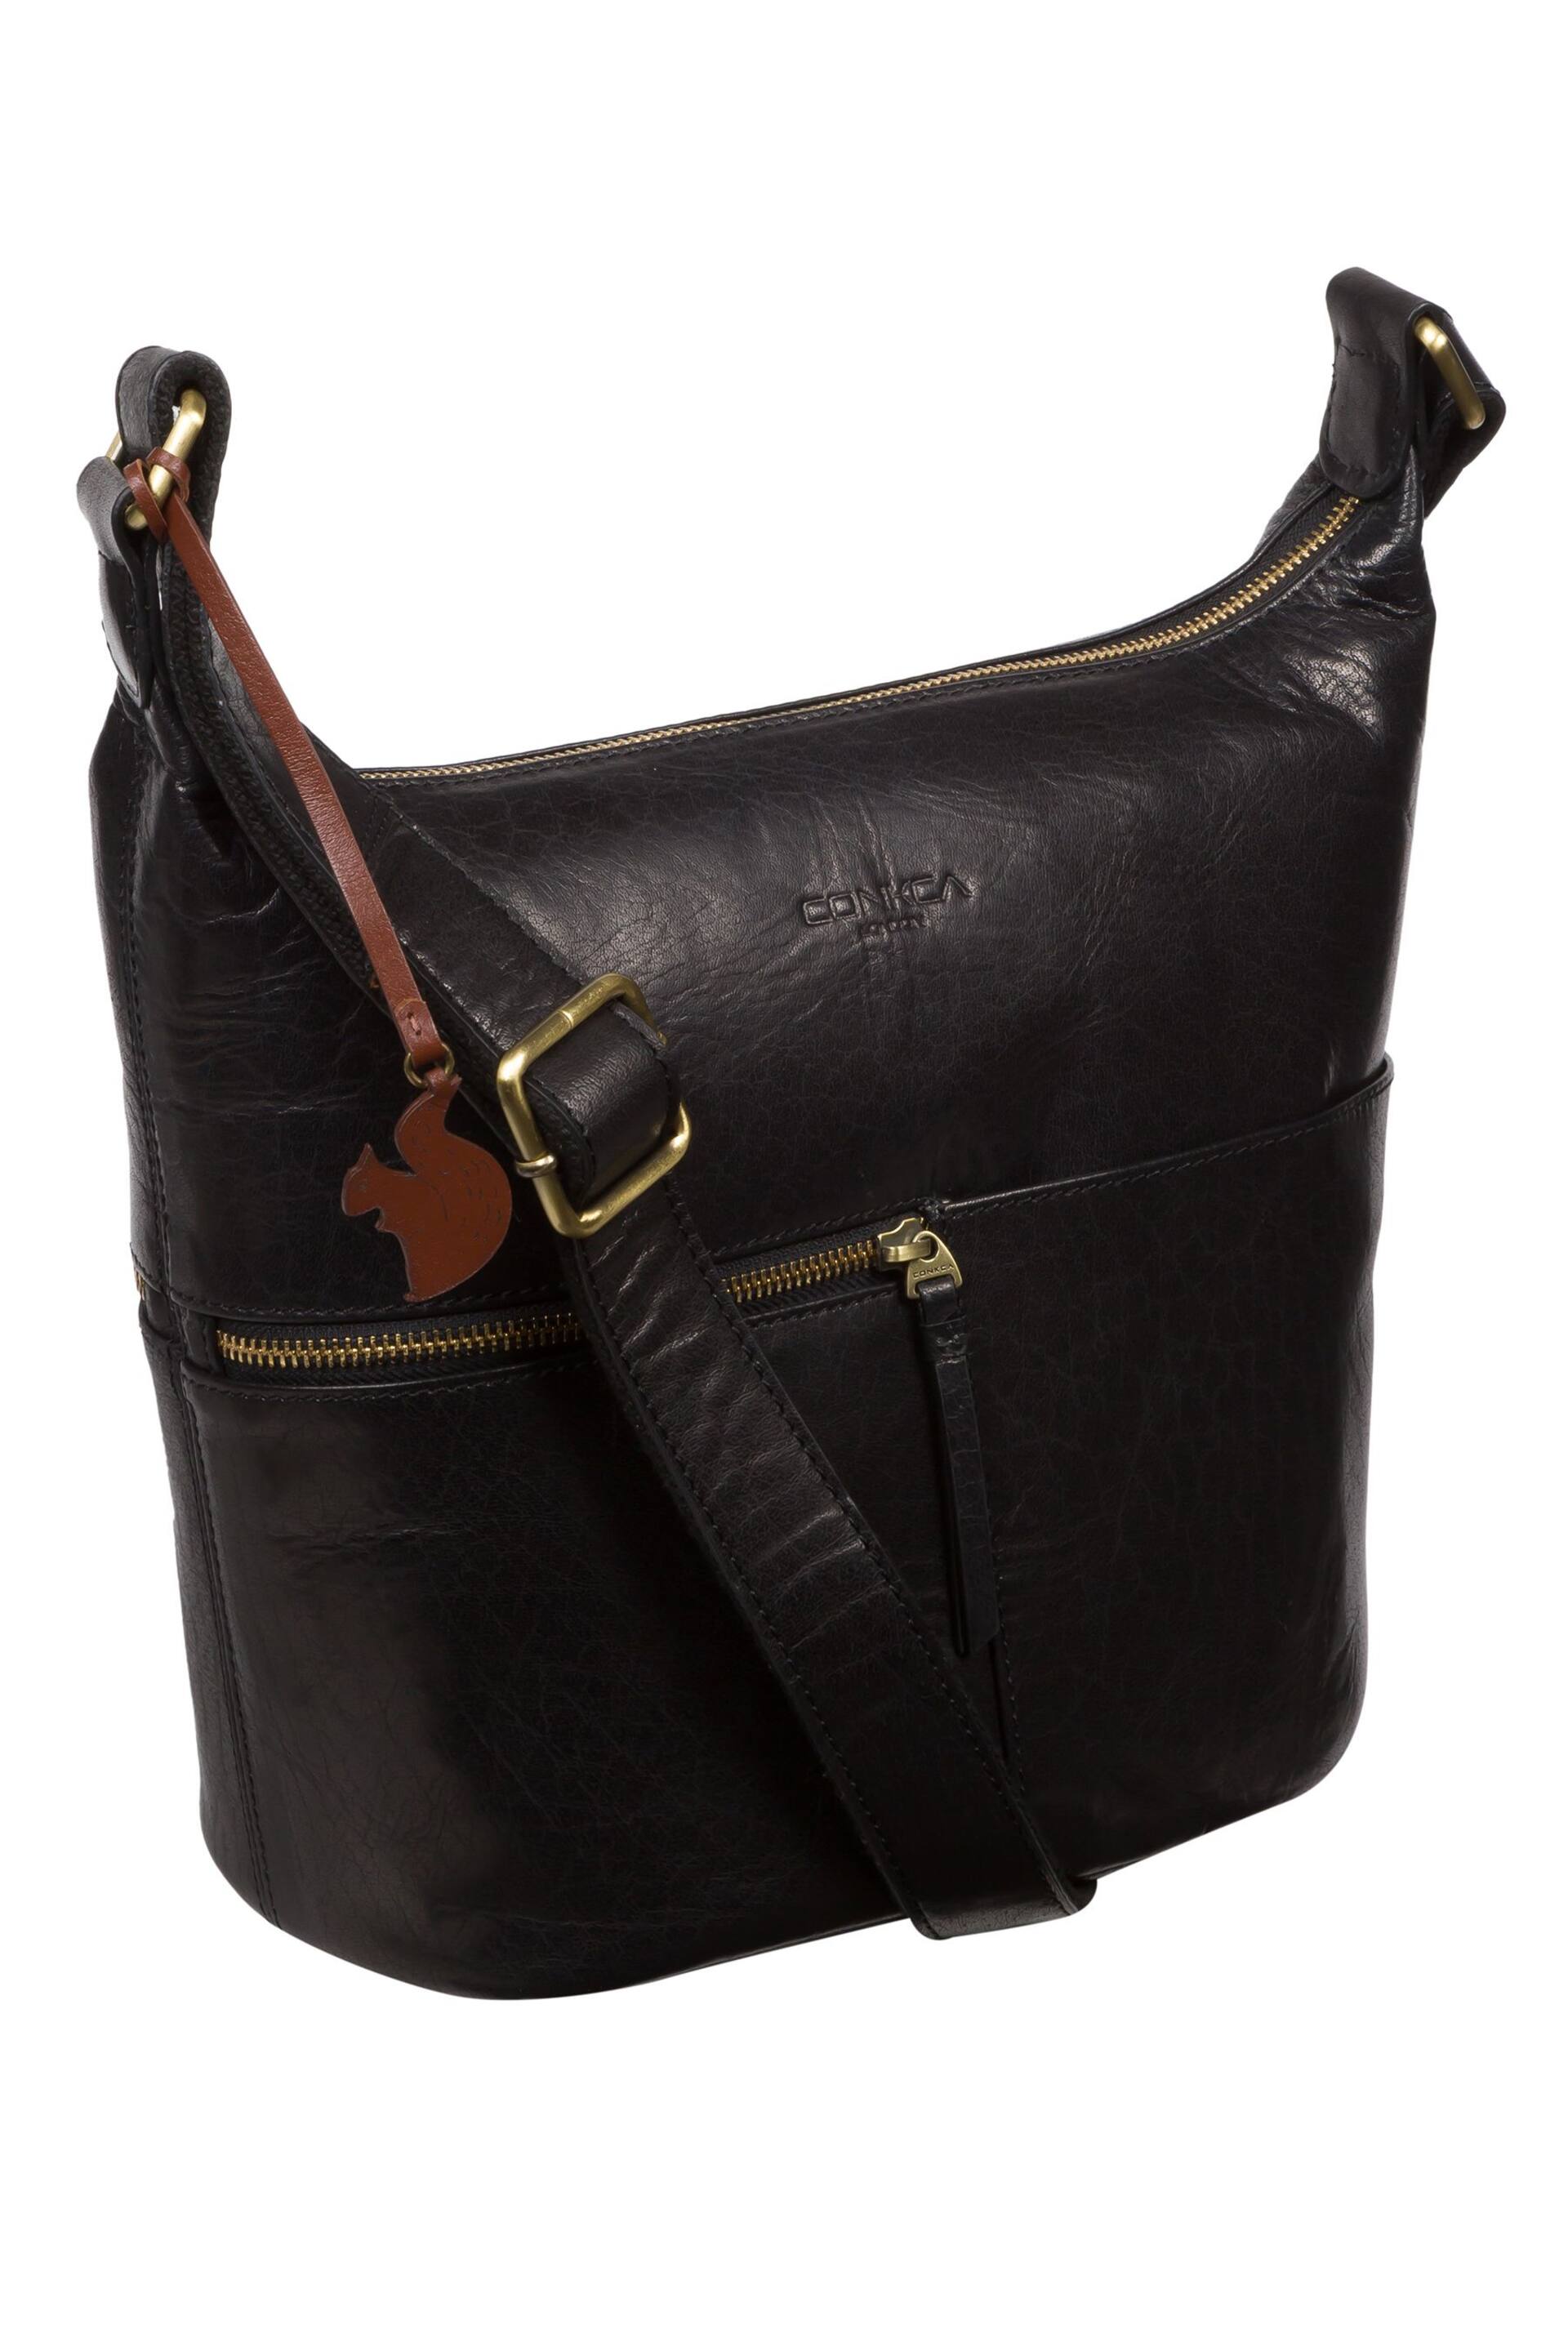 Conkca Kristin Leather Shoulder Bag - Image 4 of 6